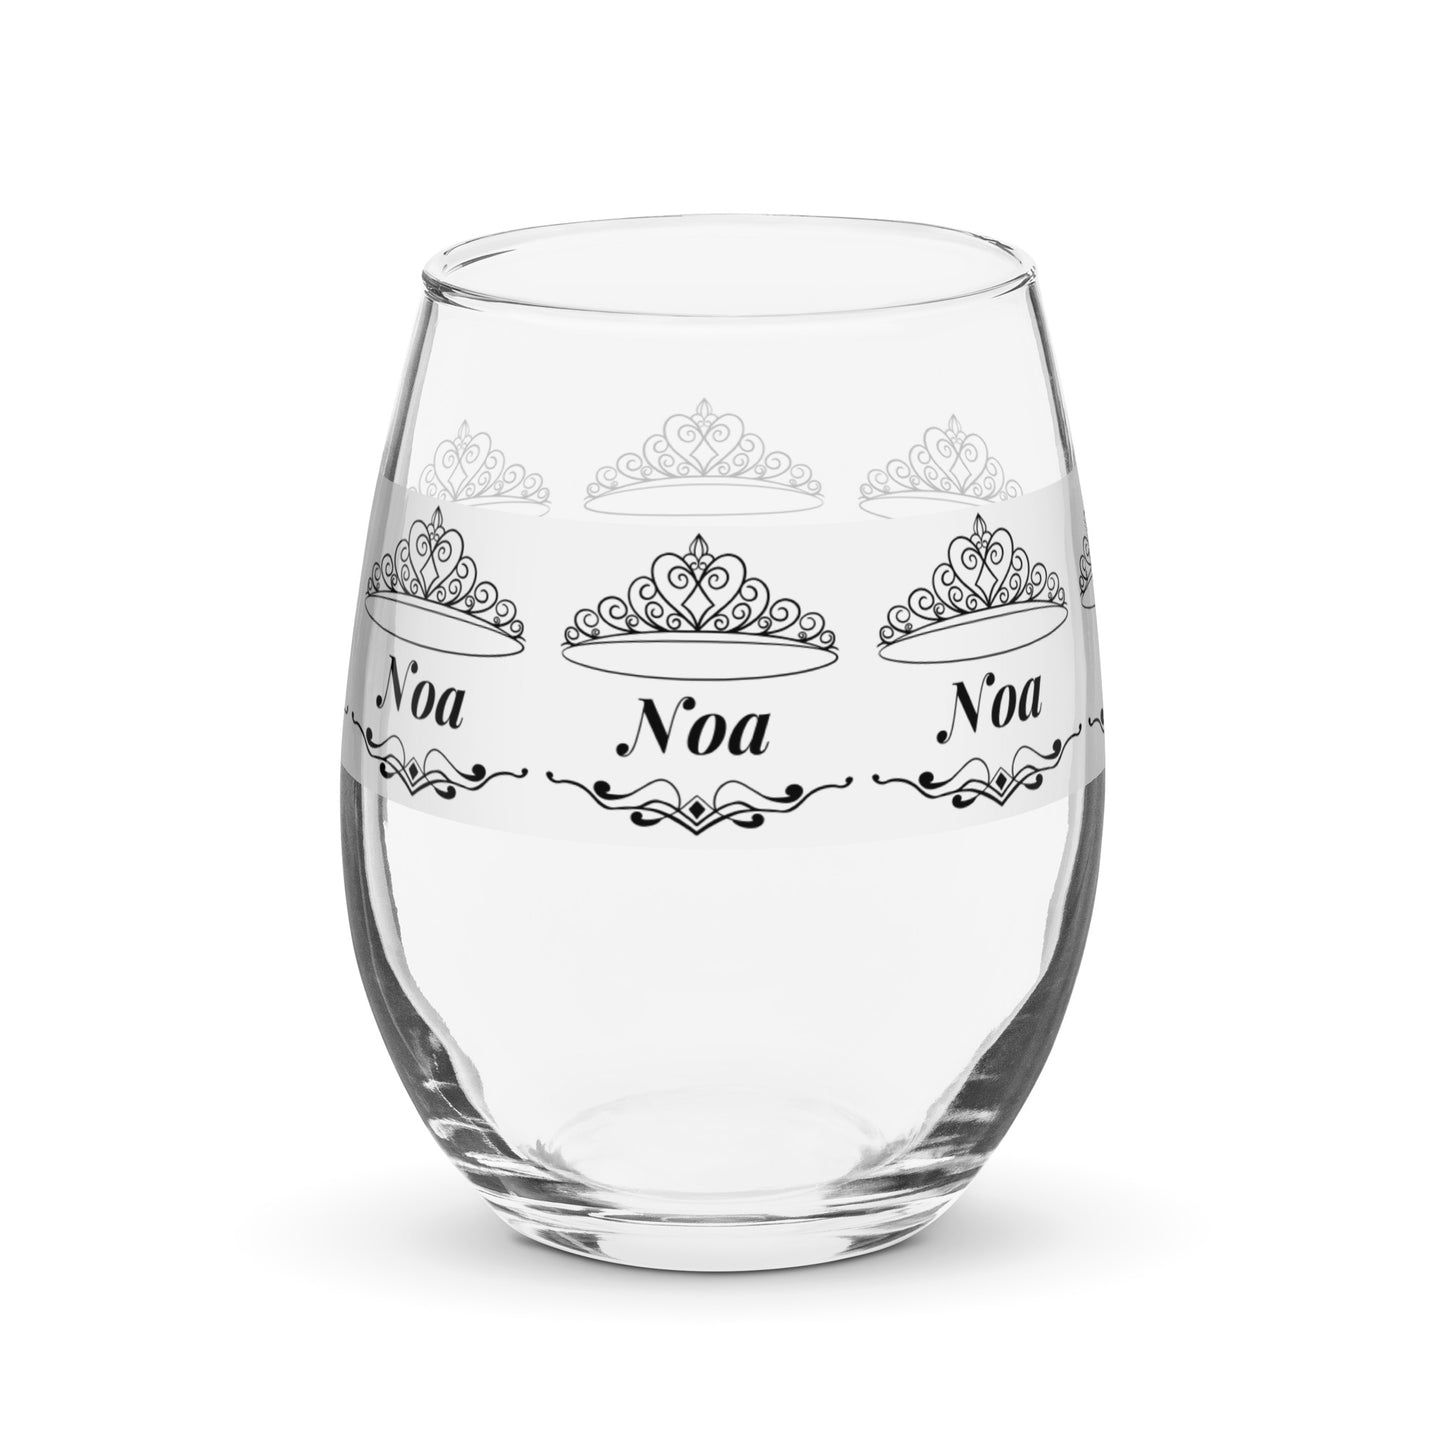 nombre copa de vino Noa copa de vino personalizada copa de vino